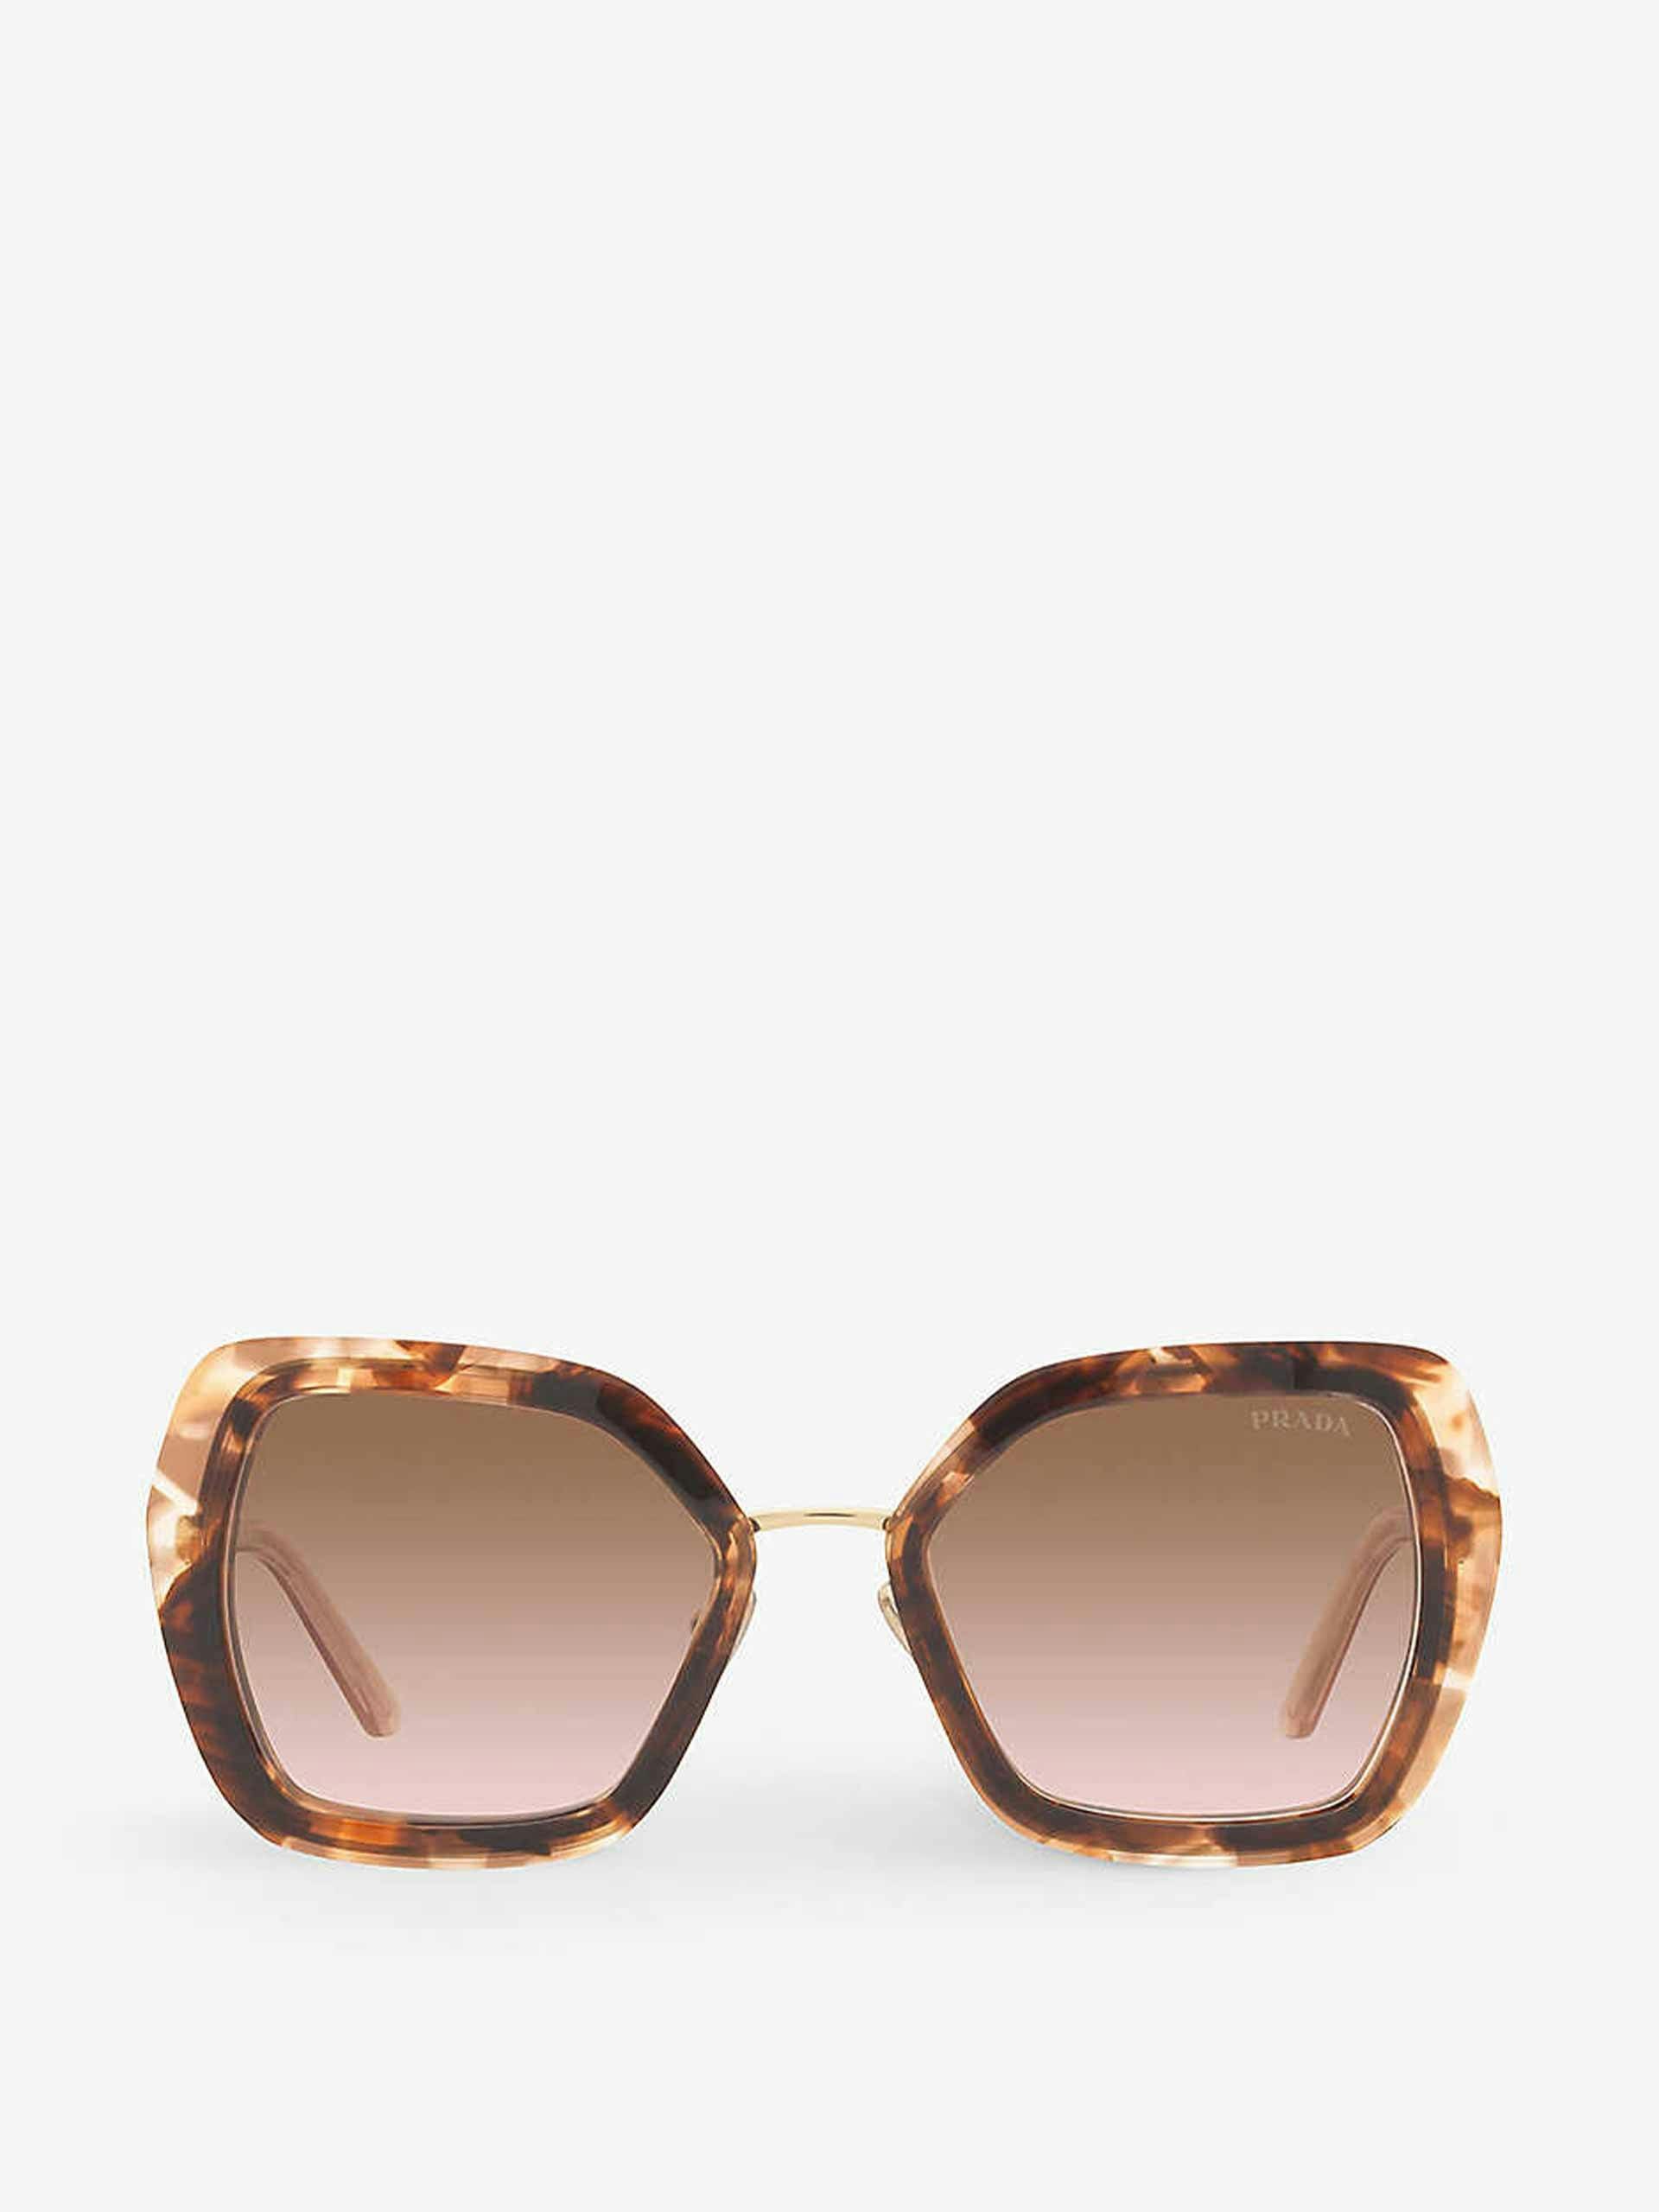 Tortoiseshell metal sunglasses